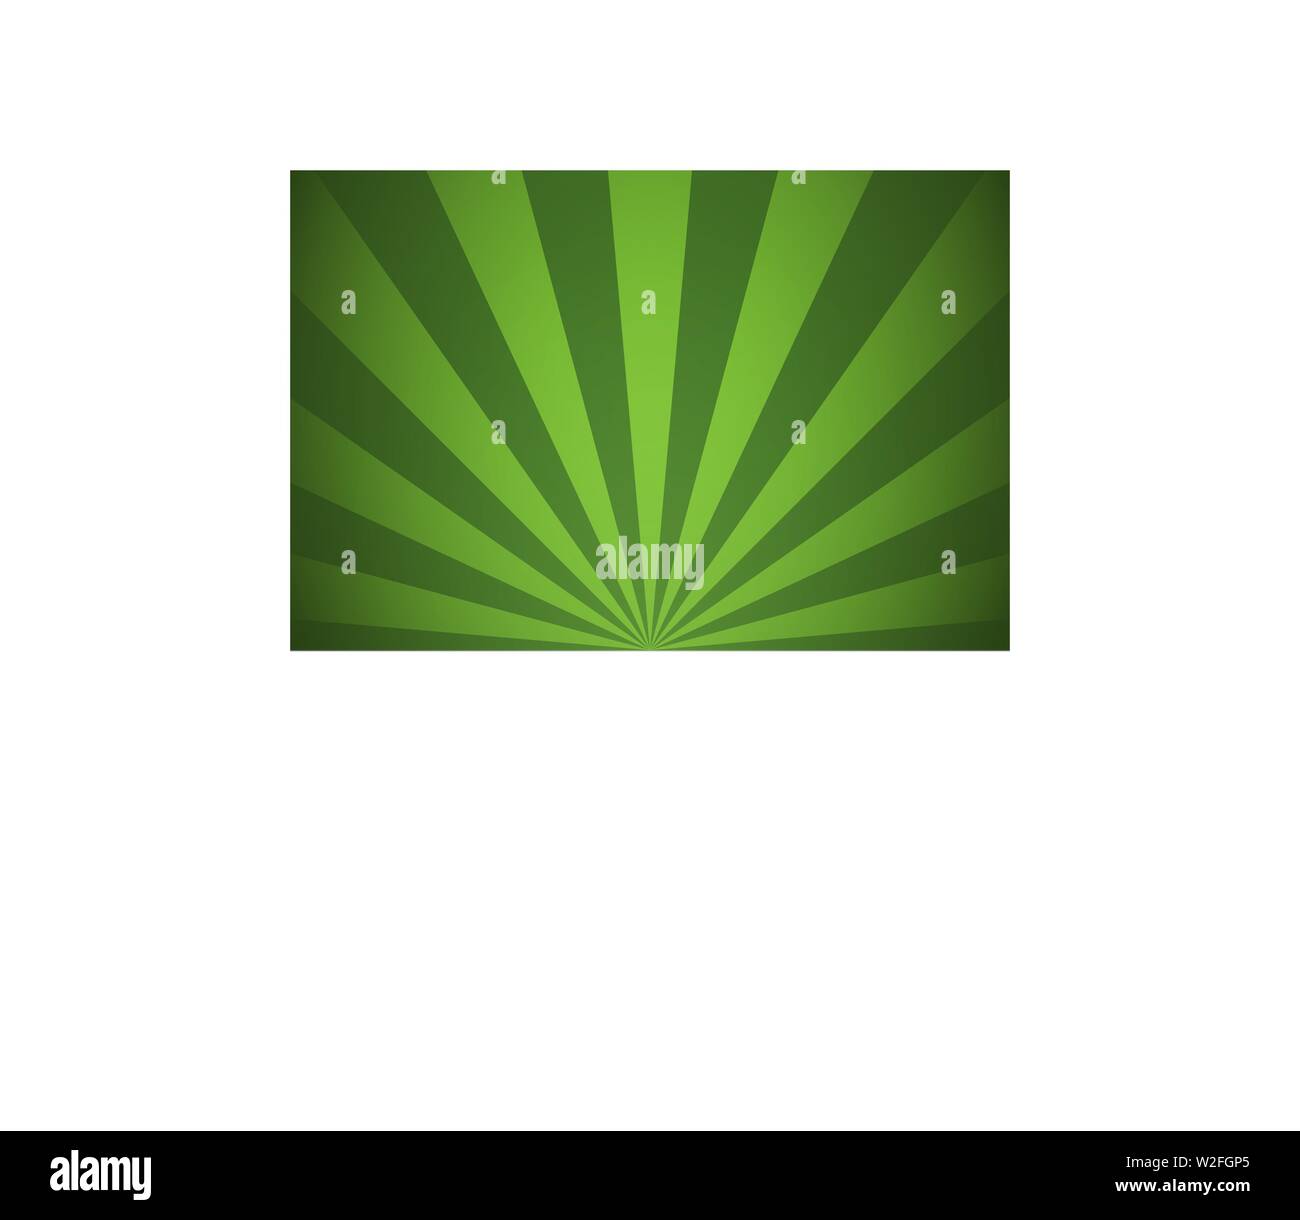 Grüne Balken und strahlen Abstract radiale Linien Hintergrund Vector Illustration Stock Vektor